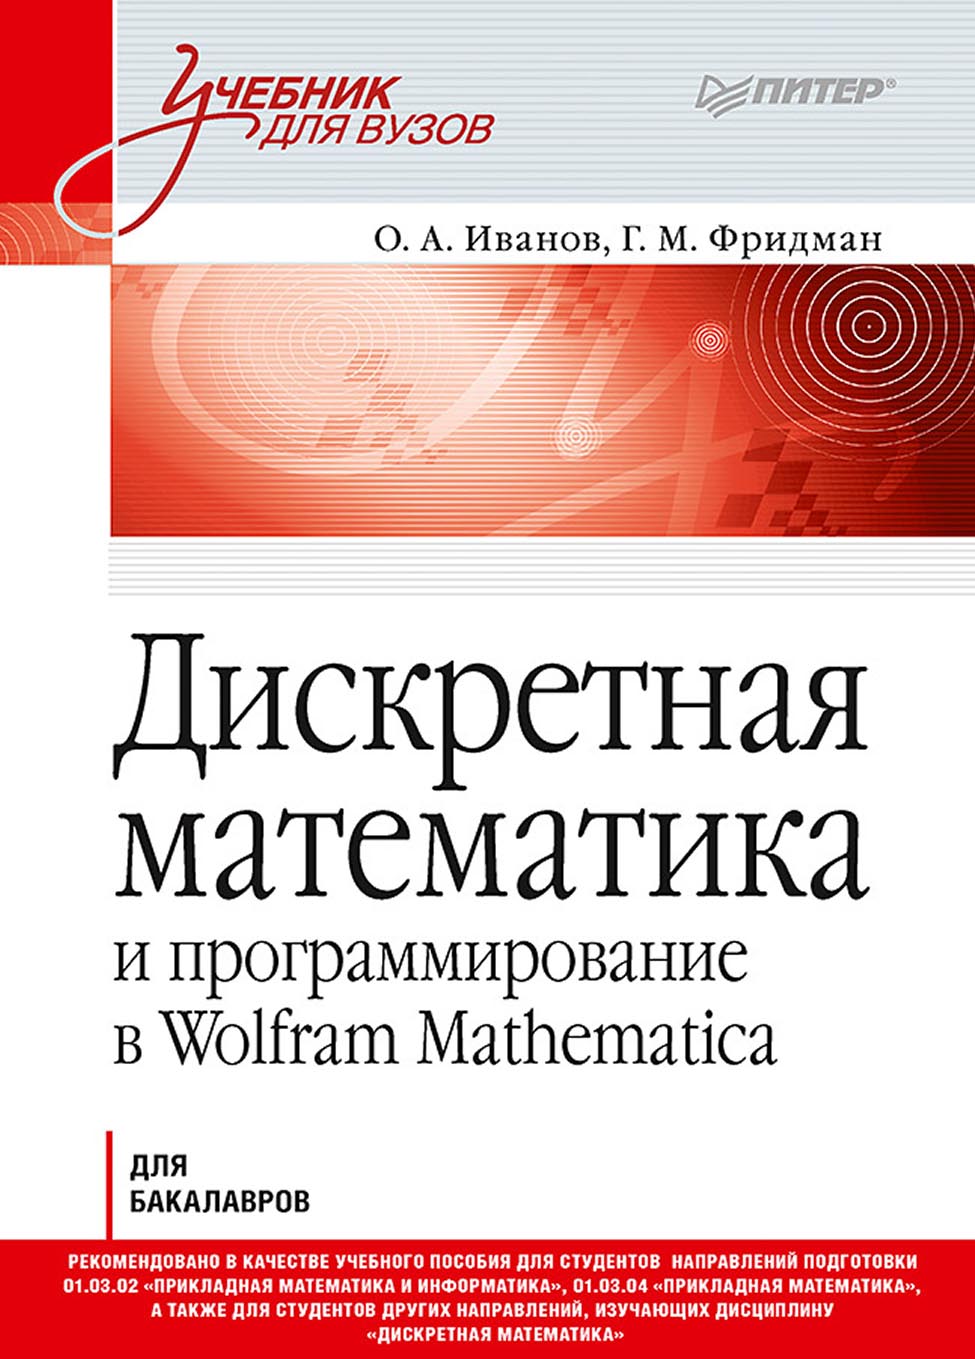 Книга Учебник для вузов (Питер) Дискретная математика и программирование в Wolfram Mathematica для бакалавров созданная Г. М. Фридман, О. А. Иванов может относится к жанру математика, программирование, программы, учебники и пособия для вузов. Стоимость электронной книги Дискретная математика и программирование в Wolfram Mathematica для бакалавров с идентификатором 66737098 составляет 789.00 руб.